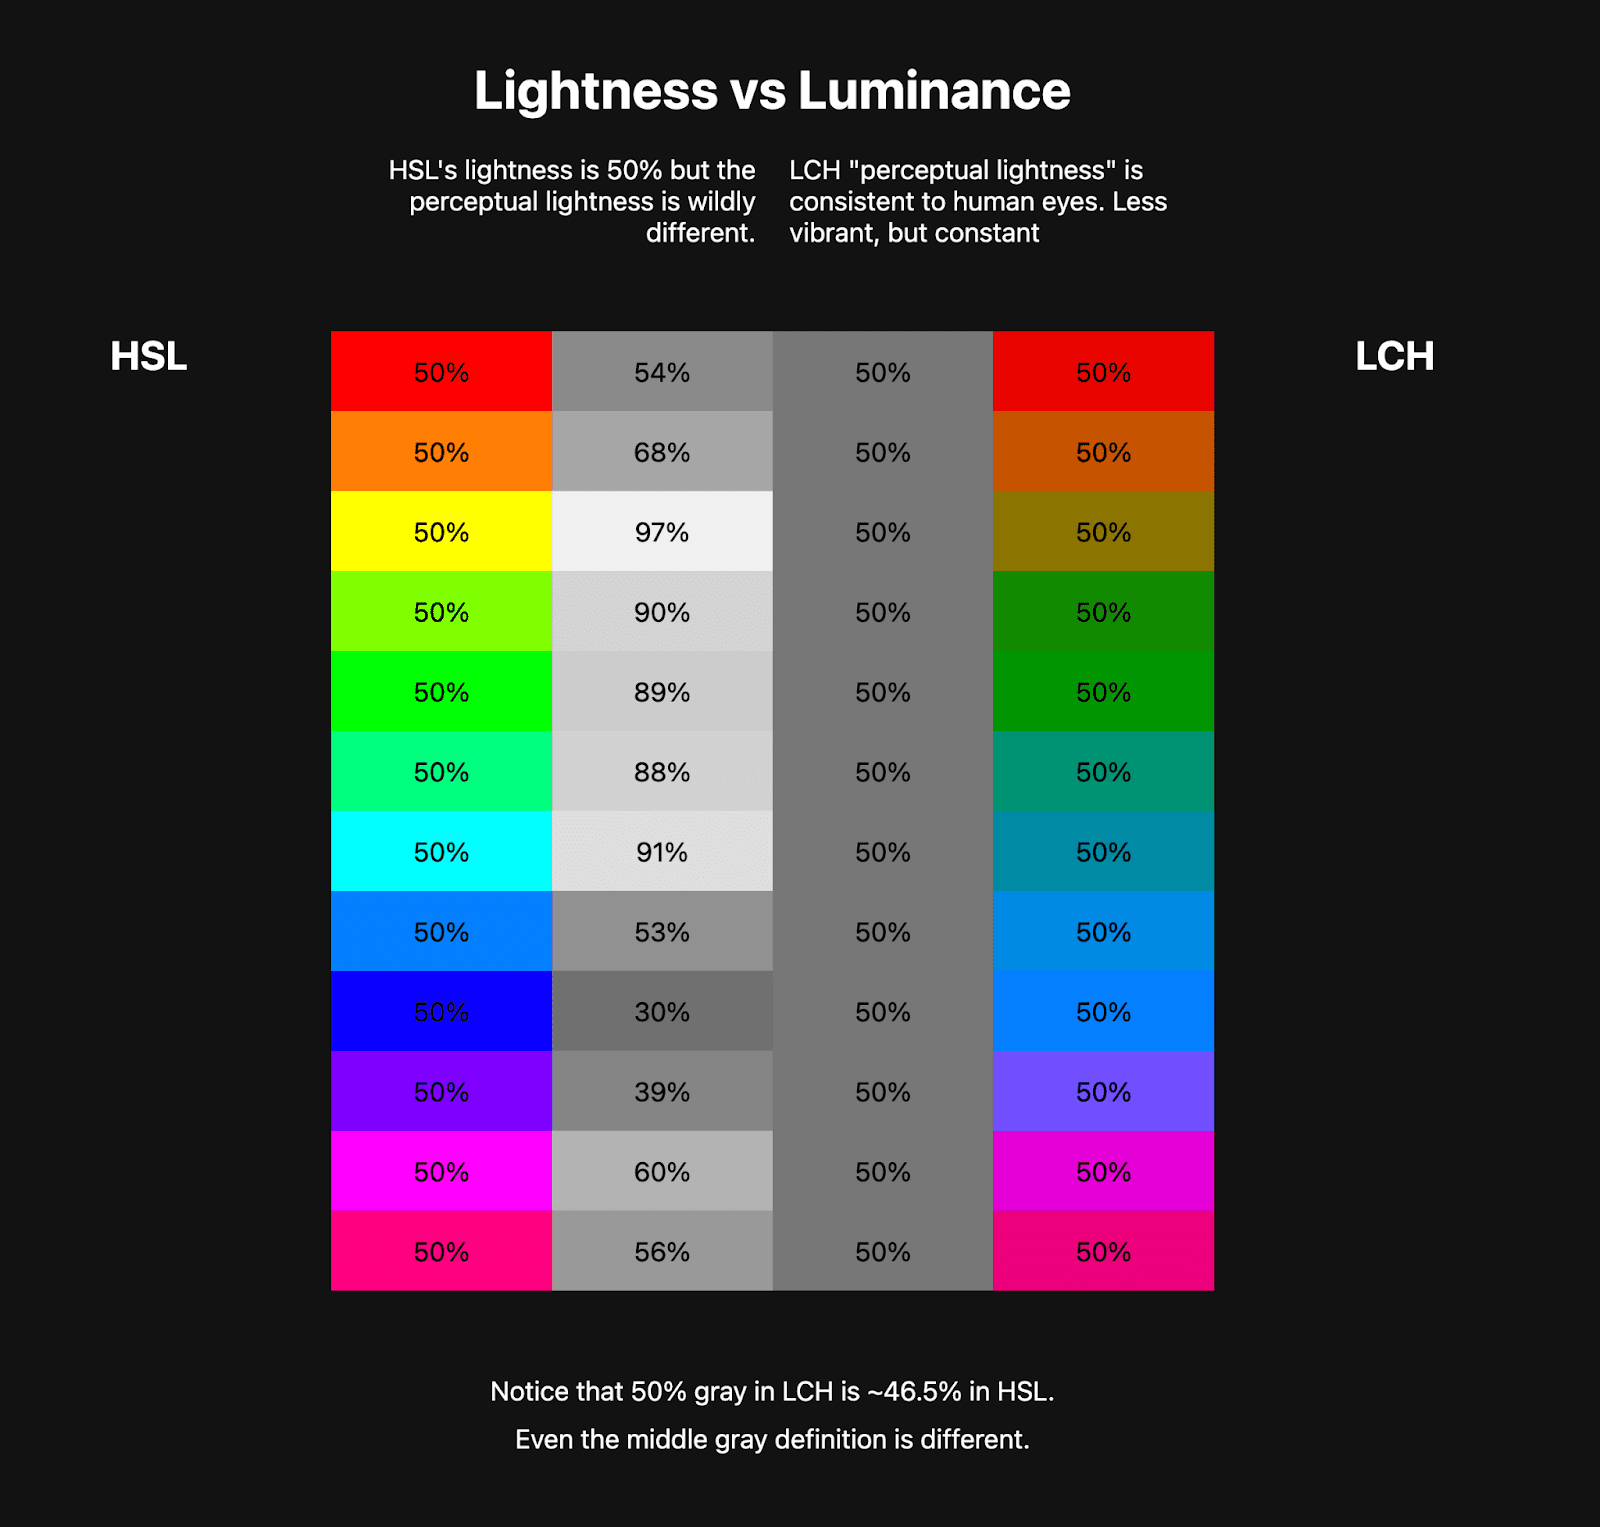 Zwei Farbtabellen sind nebeneinander. Die erste Tabelle zeigt einen HSL-Regenbogen mit etwa 10 Farben und daneben Graustufenfarben, die die Helligkeit dieser HSL-Farben darstellen. Die zweite Tabelle zeigt einen LCH-Regenbogen, der wesentlich weniger leuchtend ist, aber die Graustufenfarben daneben sind einheitlich.
    Das zeigt, dass LCH im Gegensatz zu HSL einen gesunden konstanten Helligkeitswert hat.